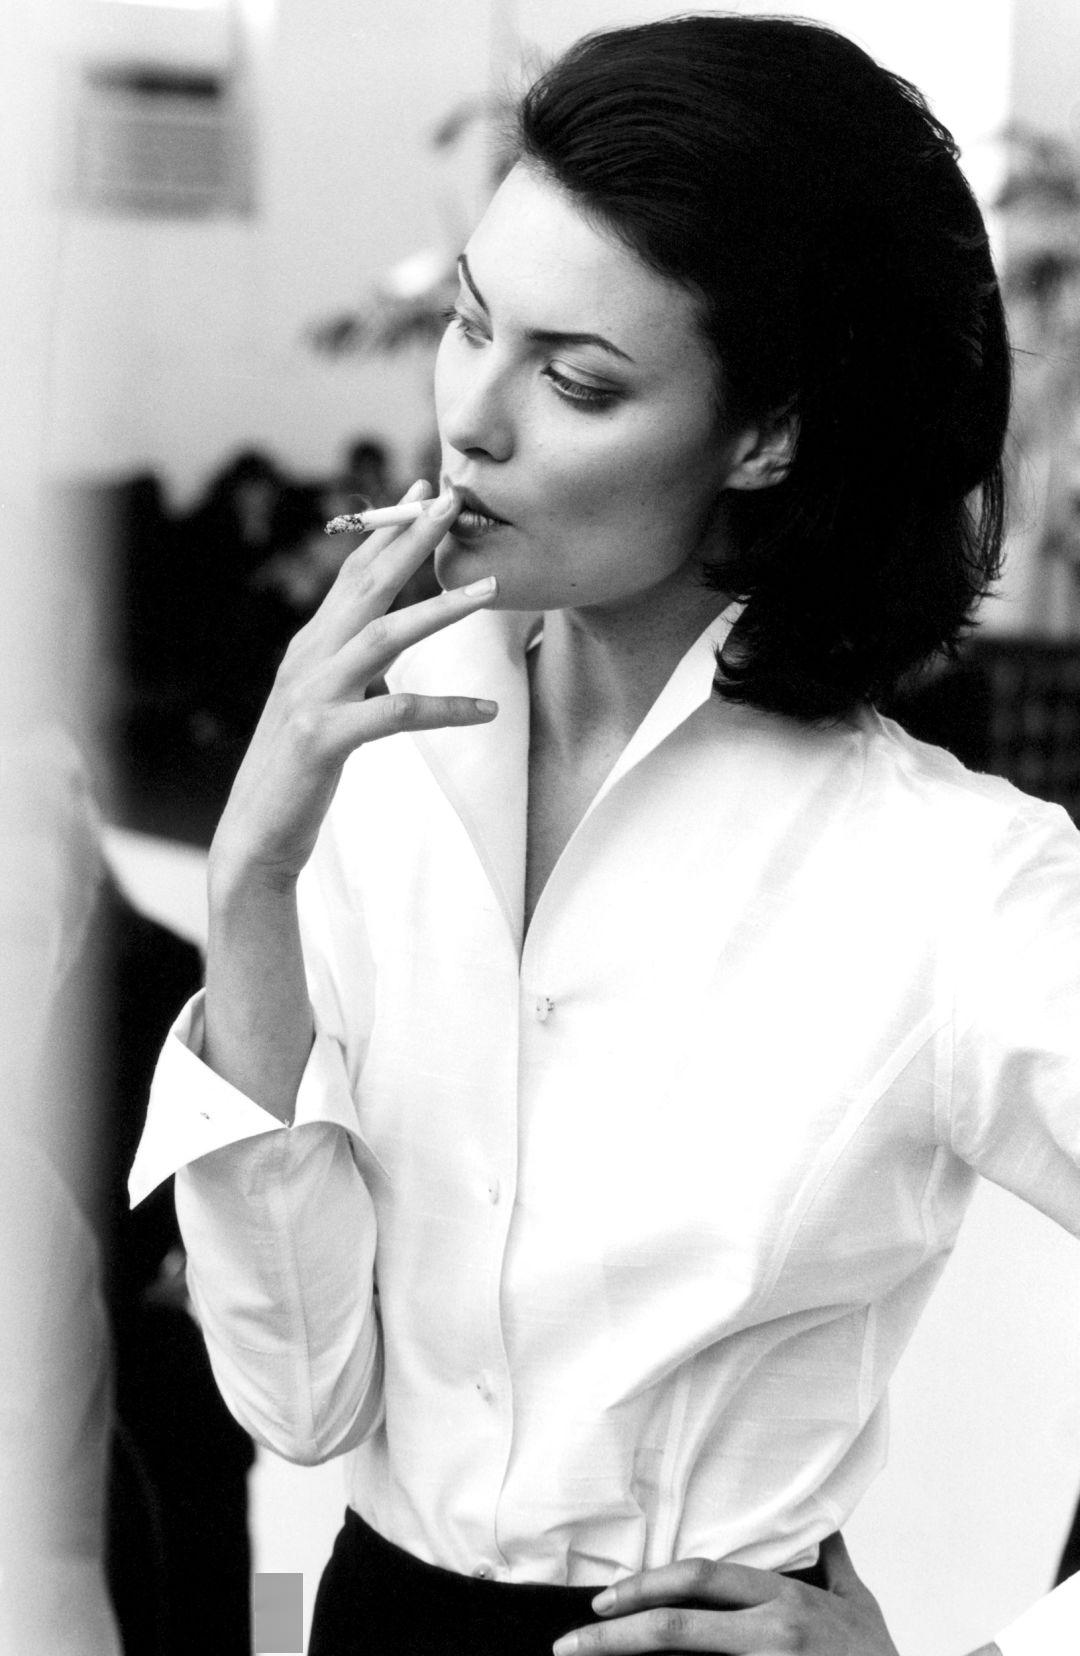 女人优雅的抽烟姿势图片